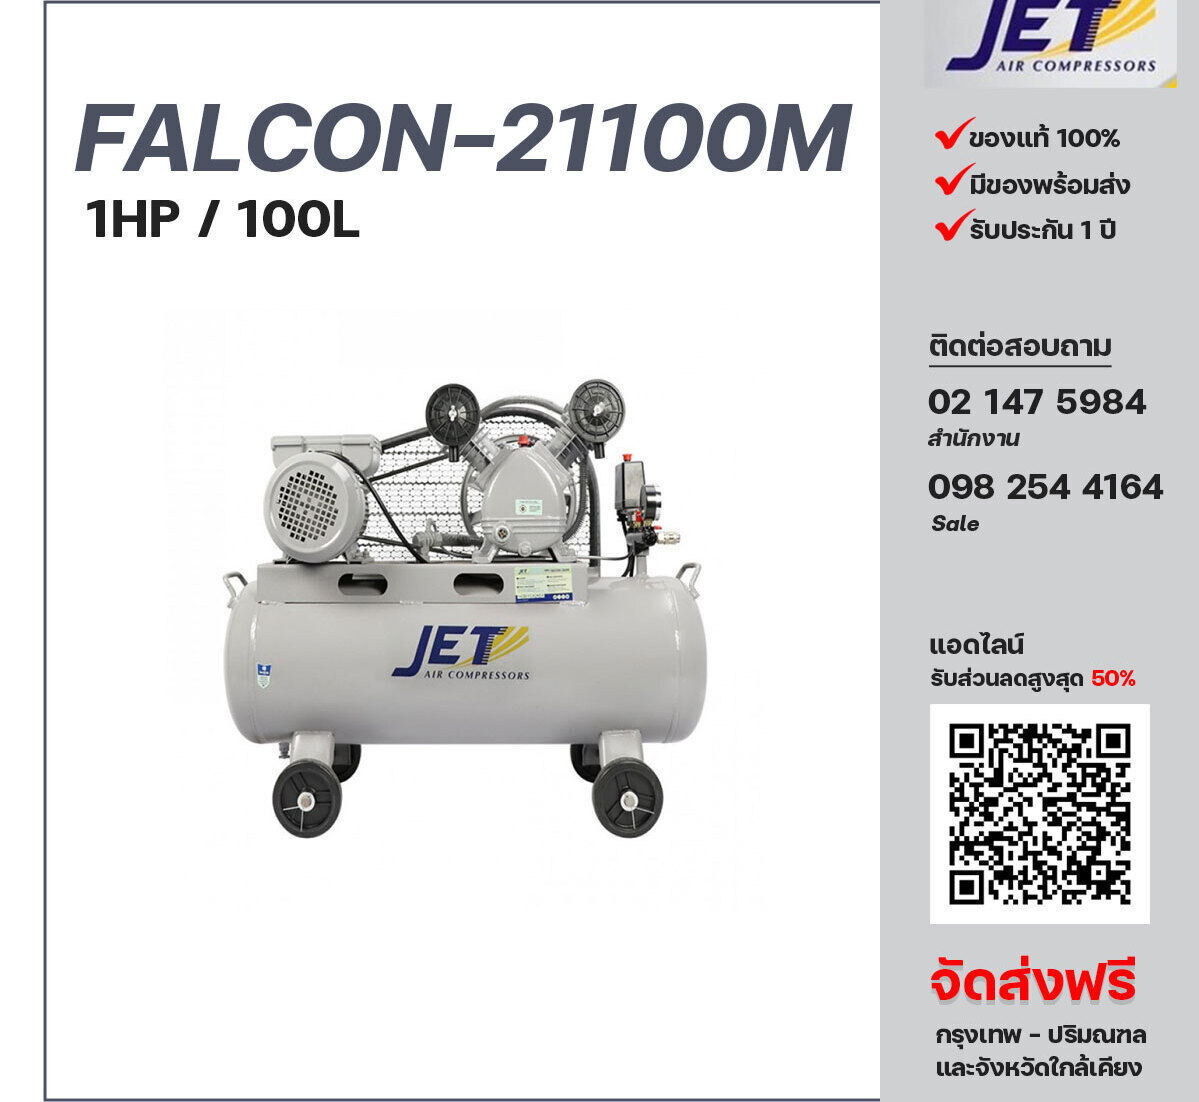 ปั๊มลมเจ็ท JET รุ่น FALCON-21100M 220V ปั๊มลมลูกสูบ ขนาด 2 สูบ 1  แรงม้า 100 ลิตร JET พร้อมมอเตอร์ ไฟ 220V ส่งฟรี กรุงเทพฯ-ปริมณฑล รับประกัน 1 ปี